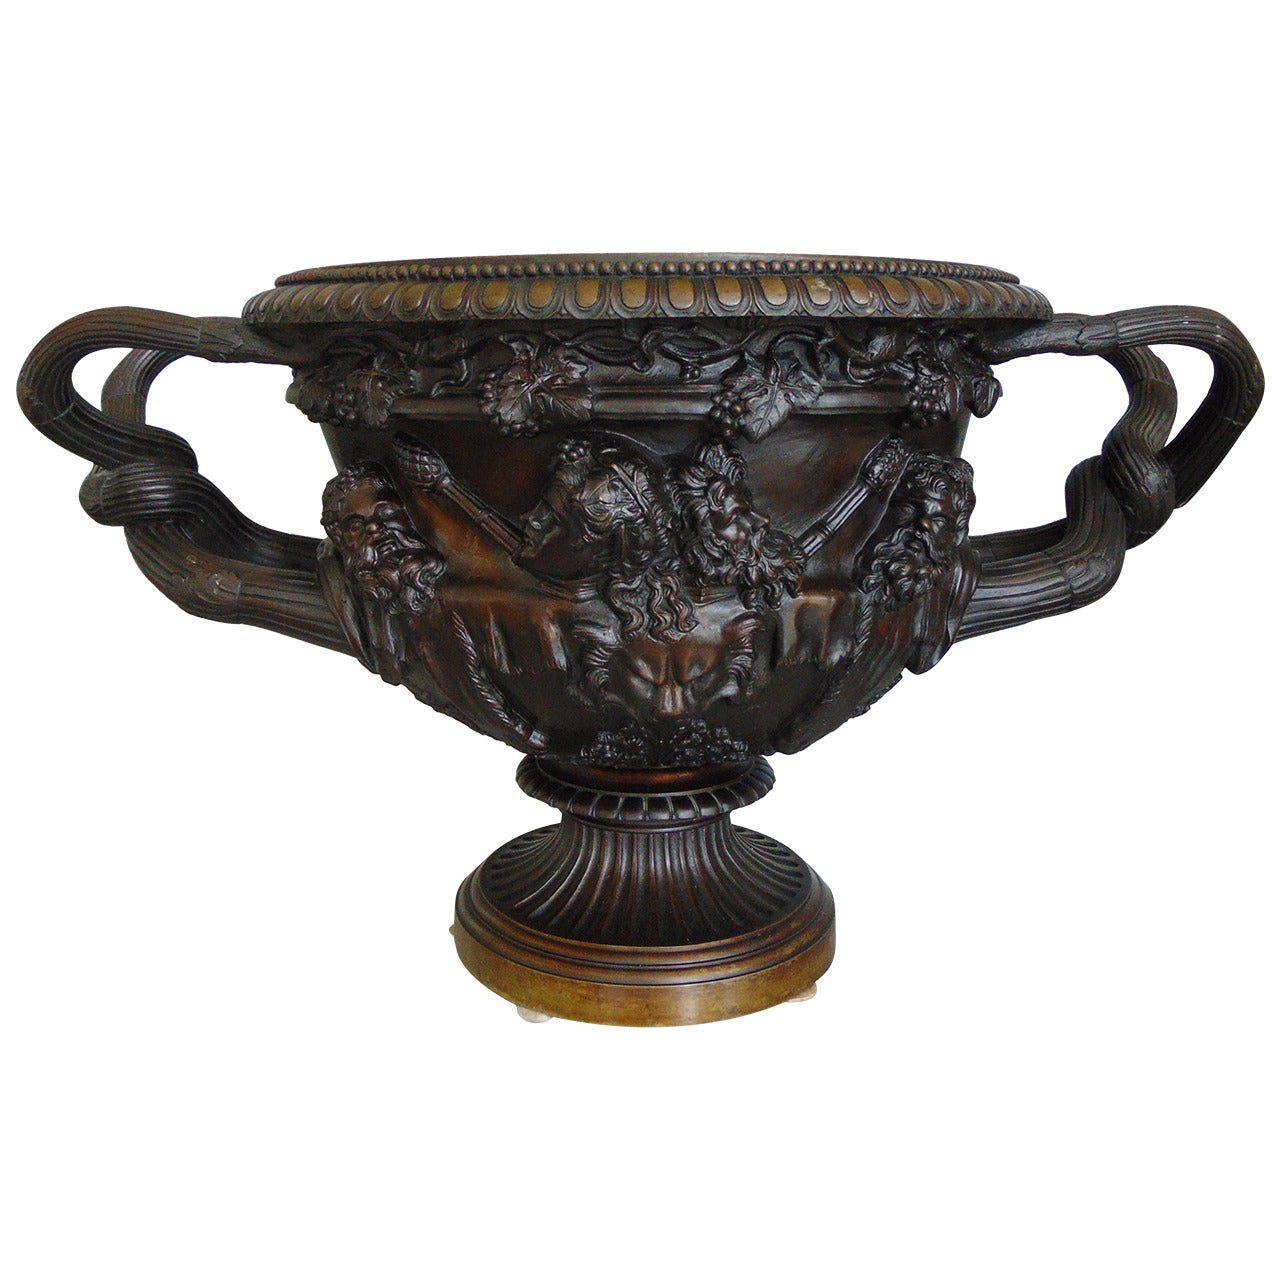 Warwick Vase made of Patinated Bronze, 23' wide. Attr. to Eugene Cornu, Paris